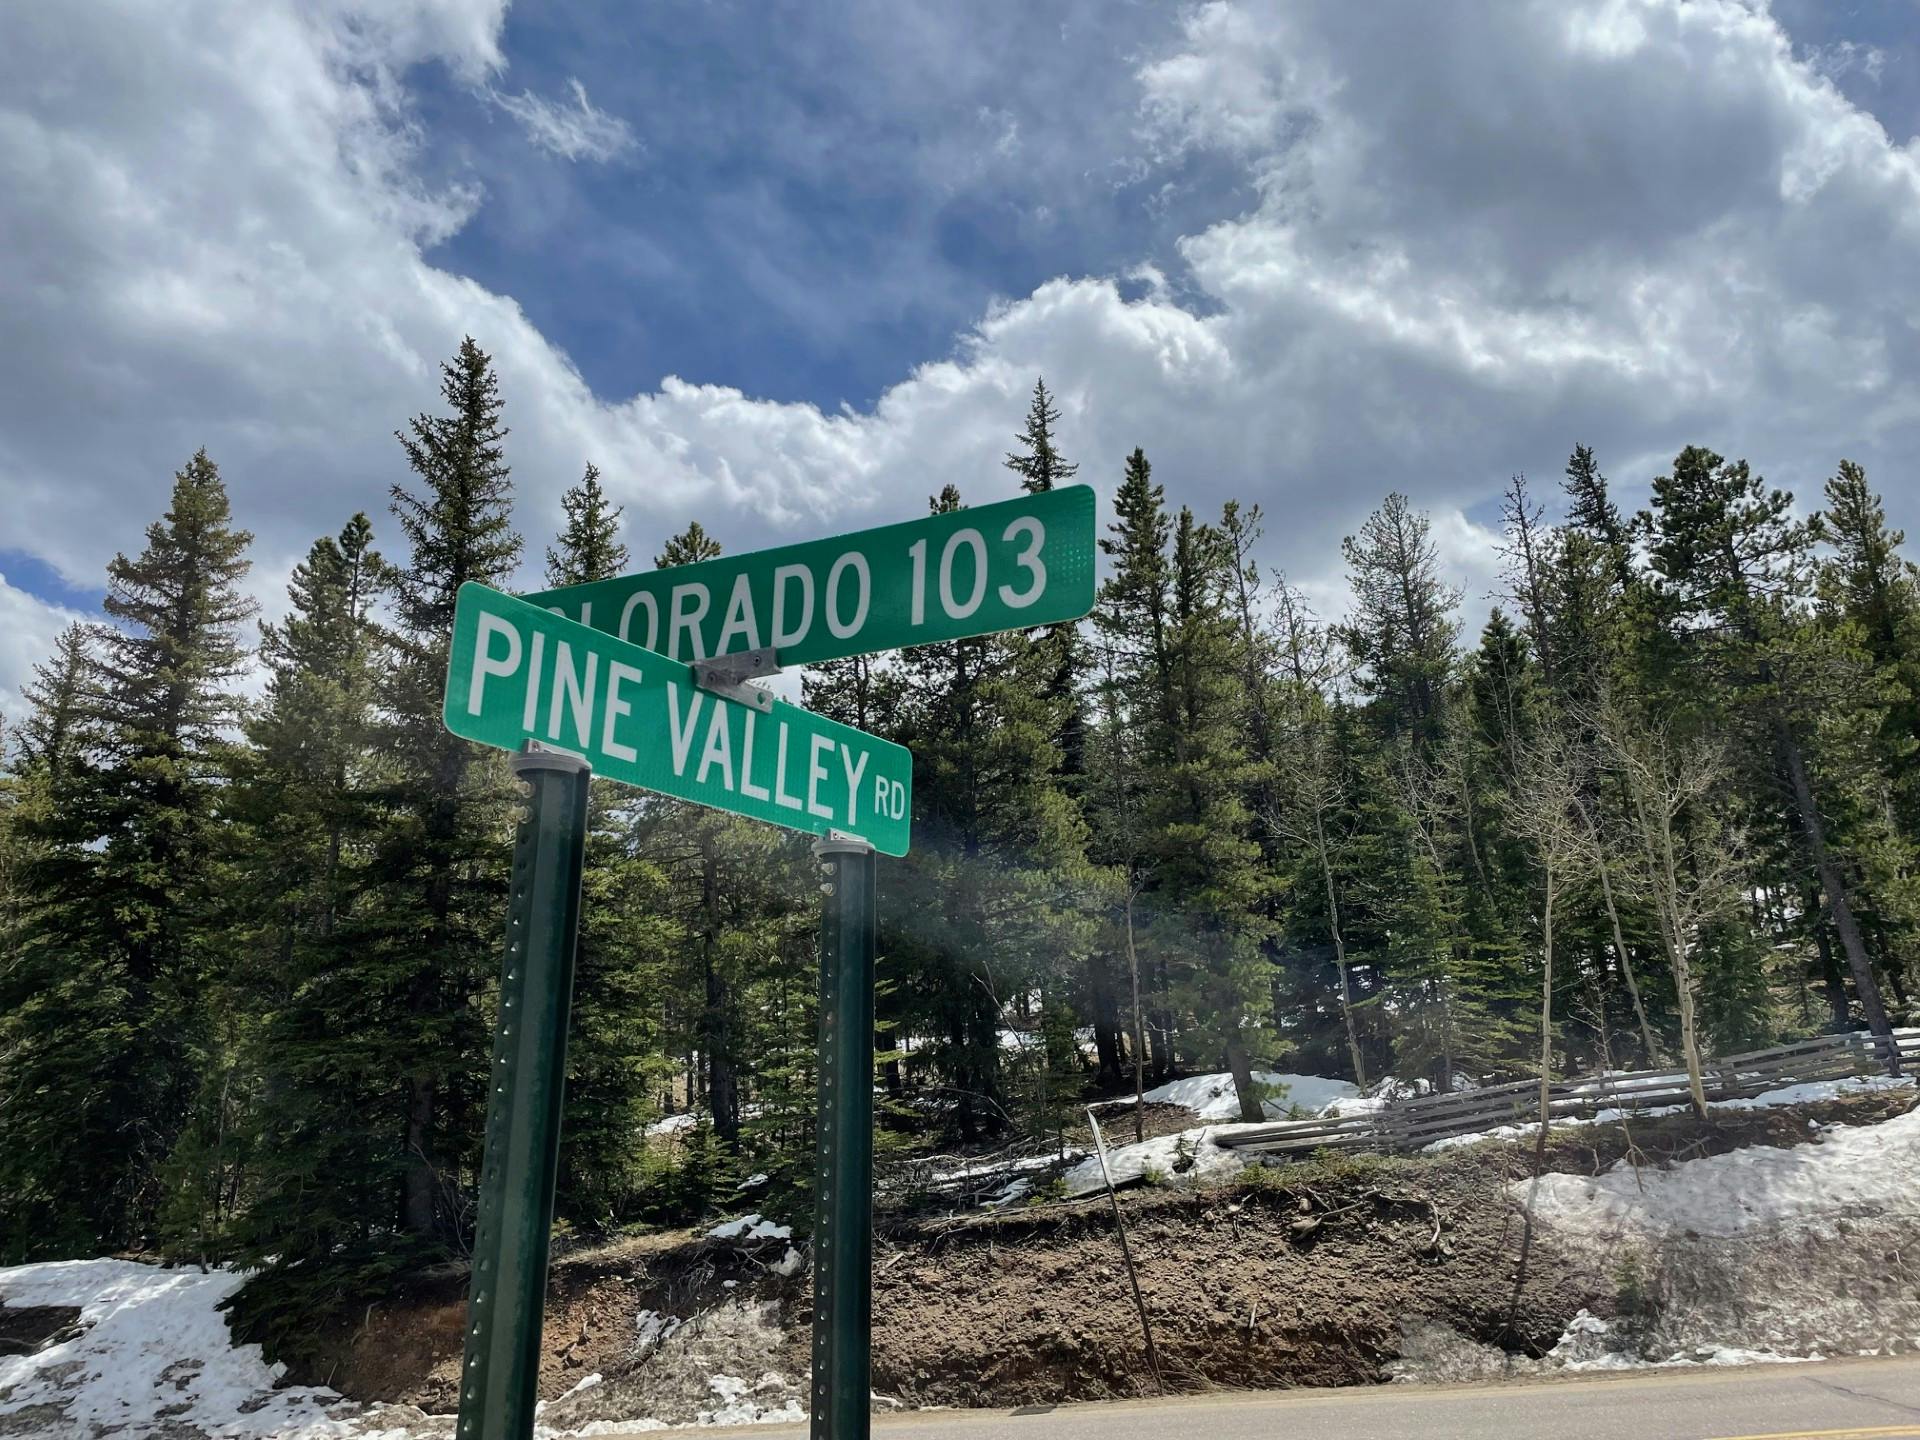 Pine Valley/Colorado 103 Intersection